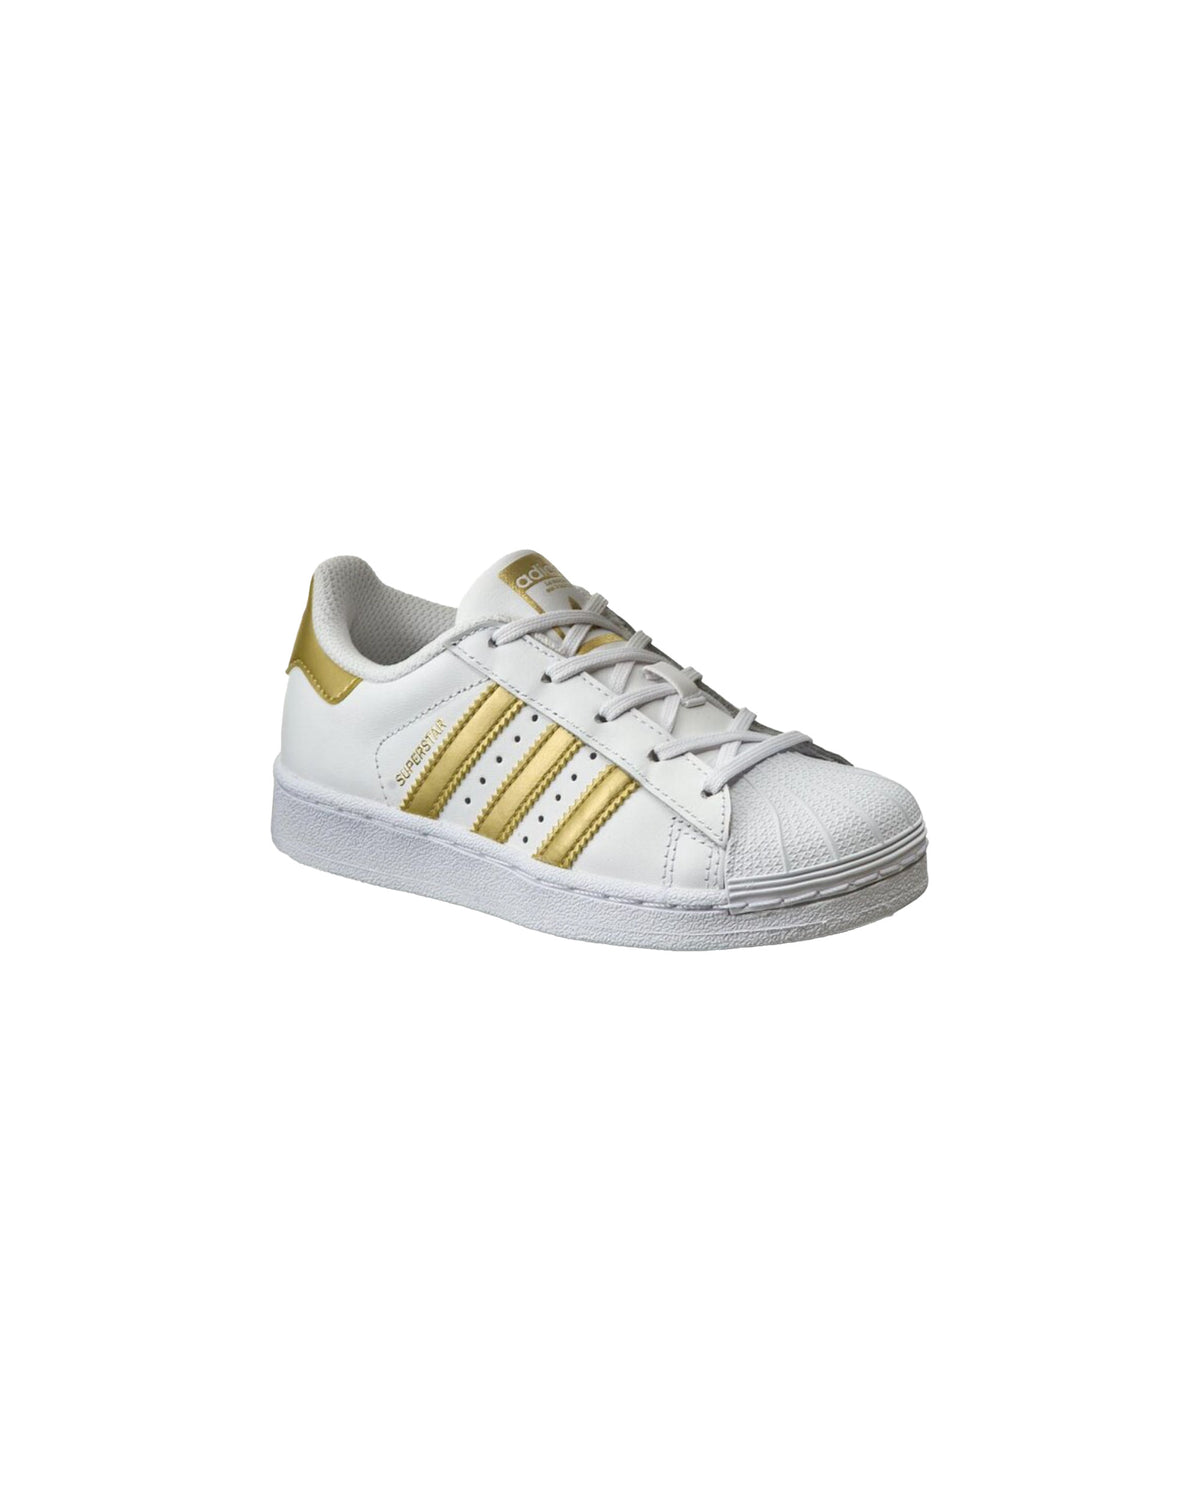 Adidas Superstar C White Gold